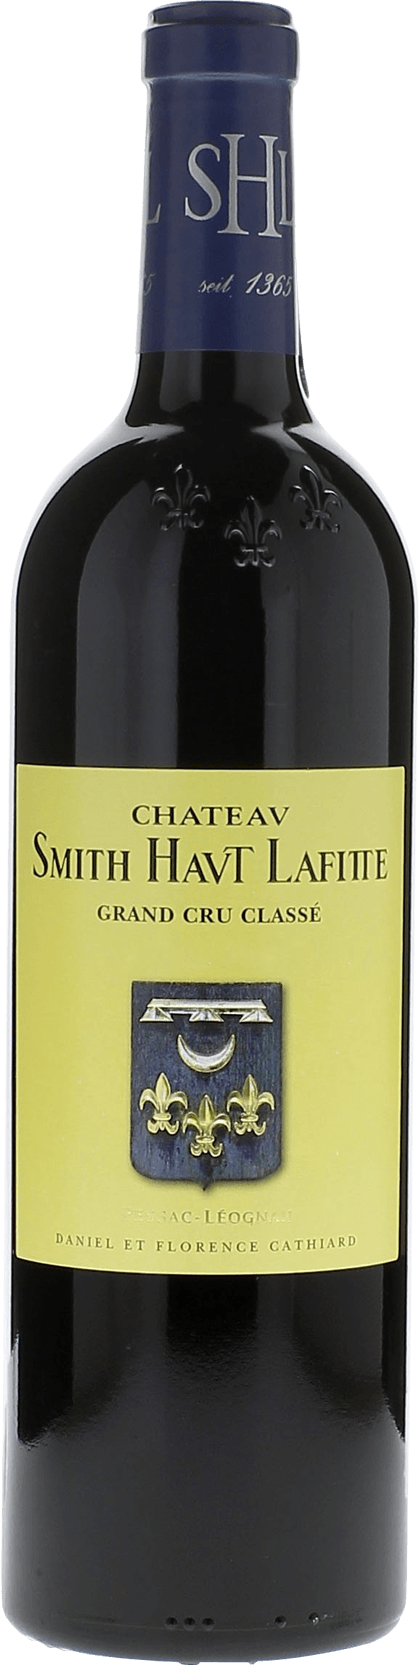 Smith haut lafitte 2007 Grand Cru Class Graves, Bordeaux rouge